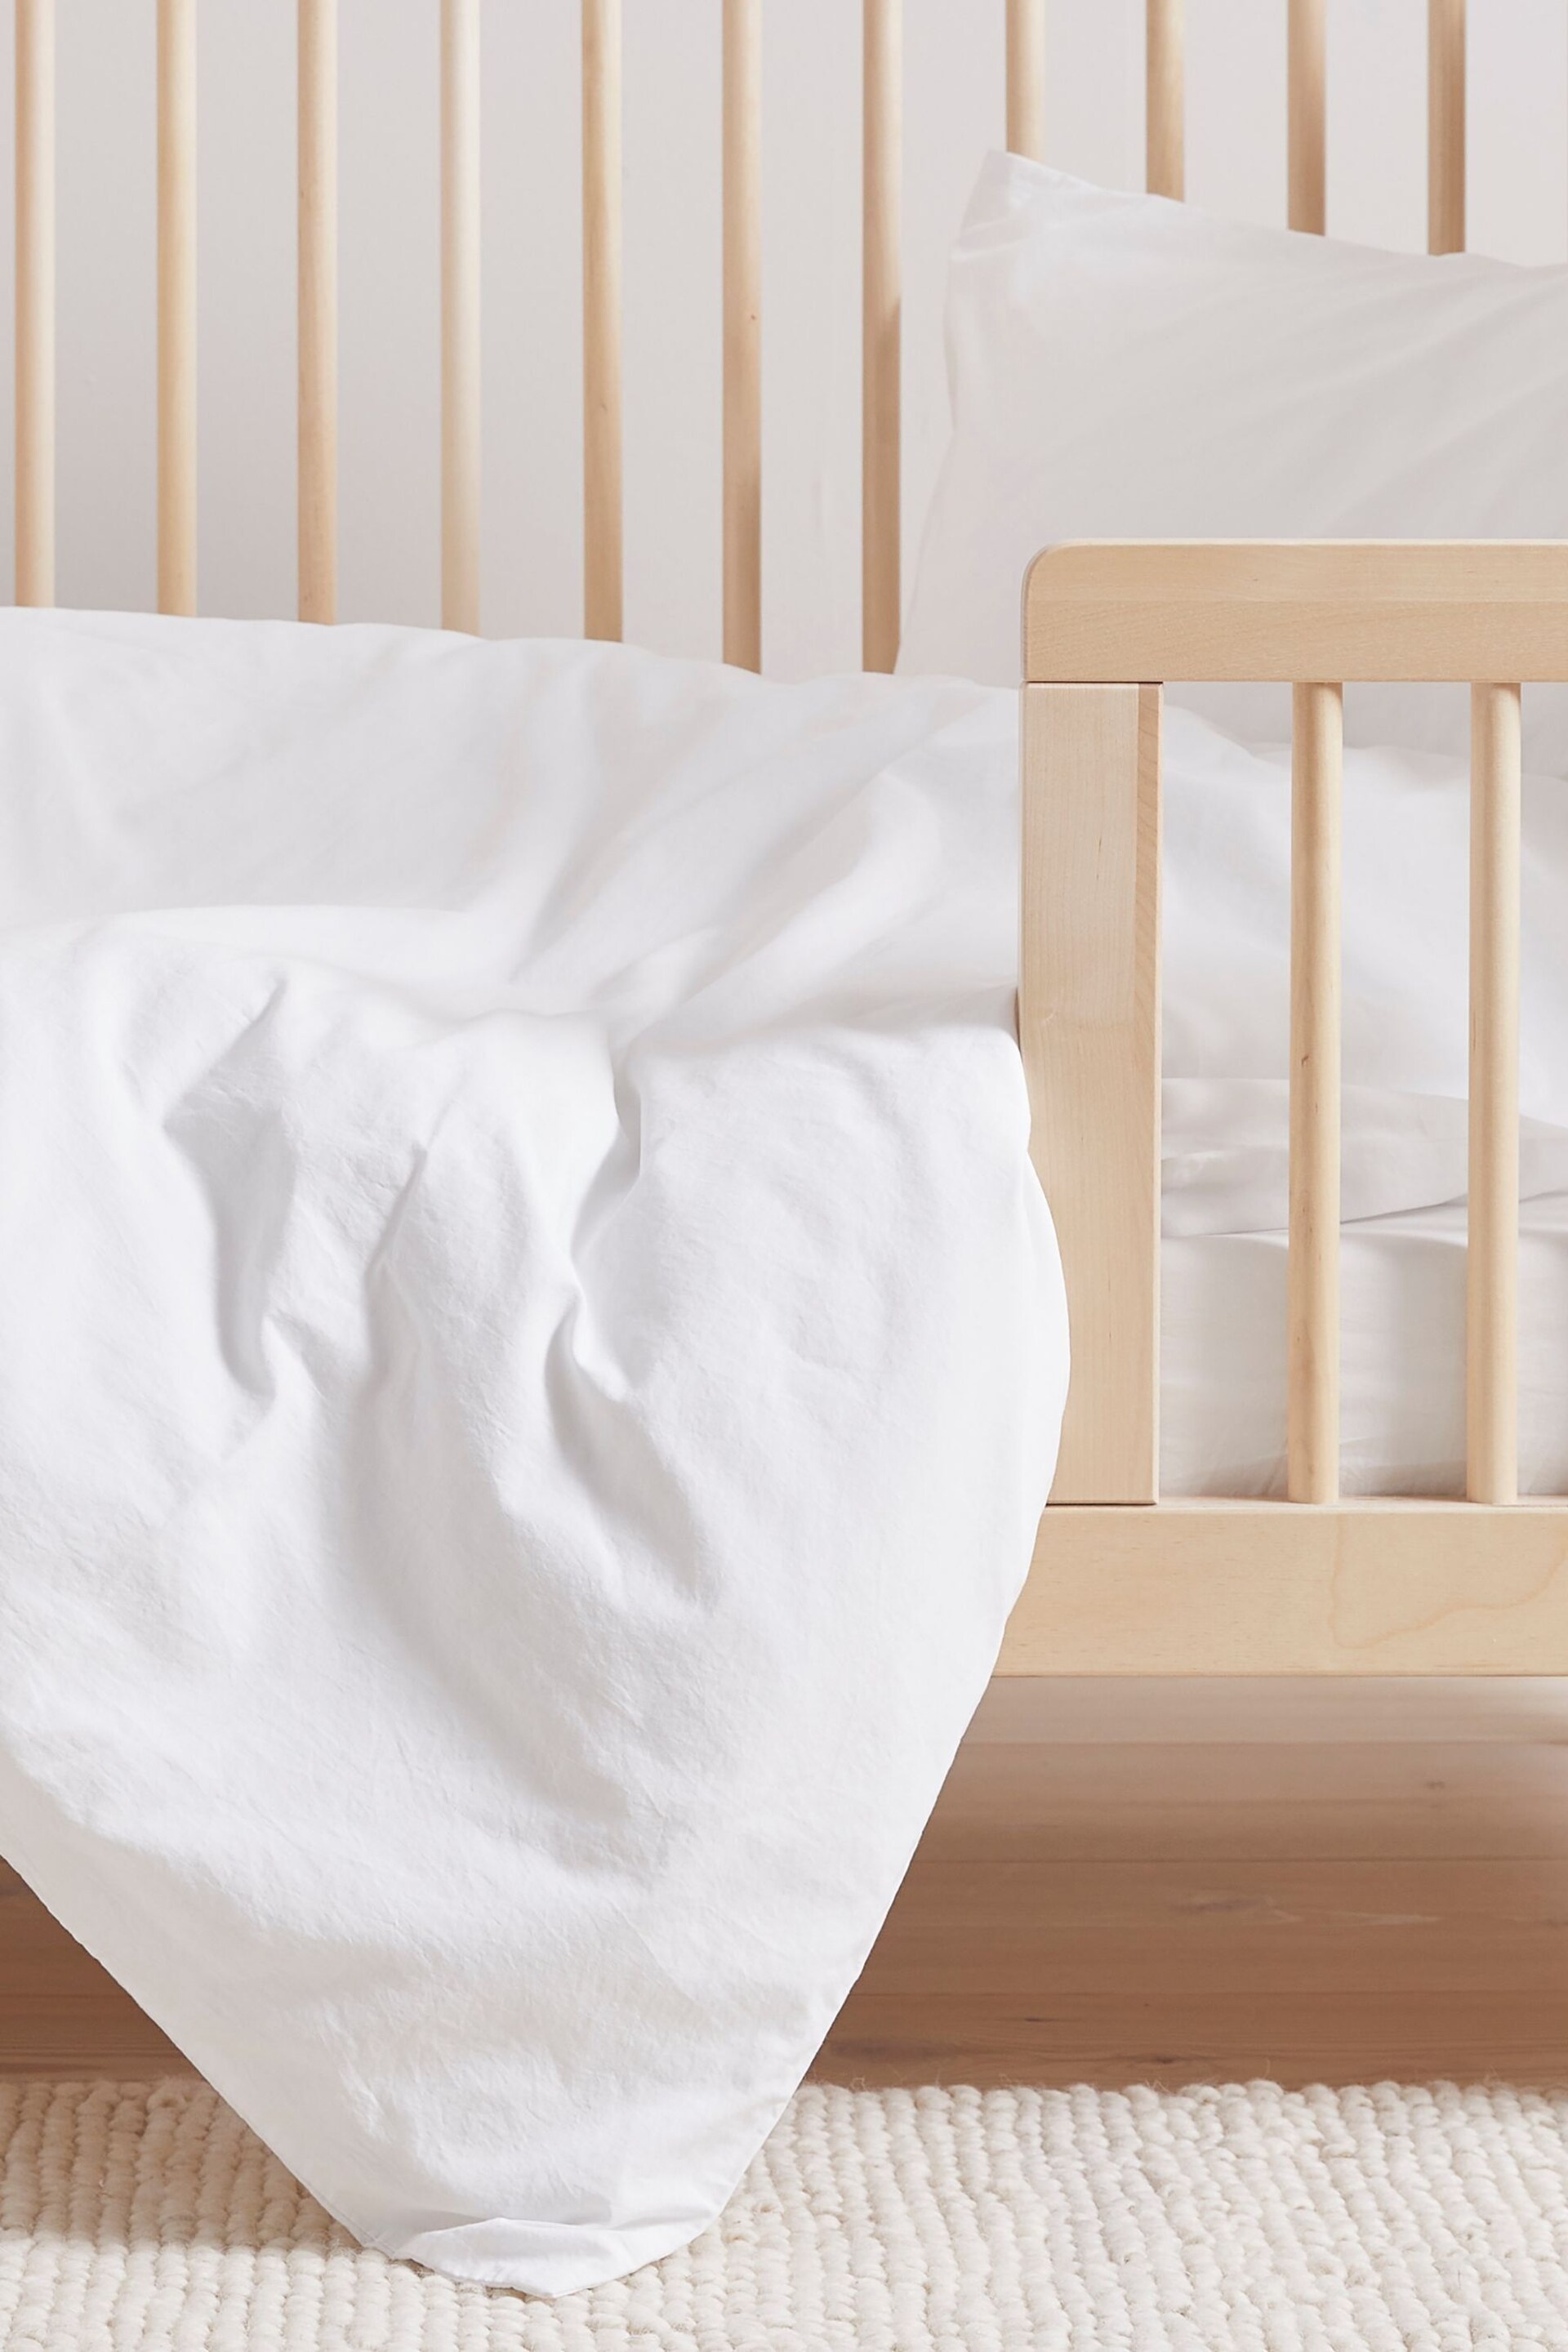 Bedfolk White Toddler Duvet Cover - Image 1 of 3